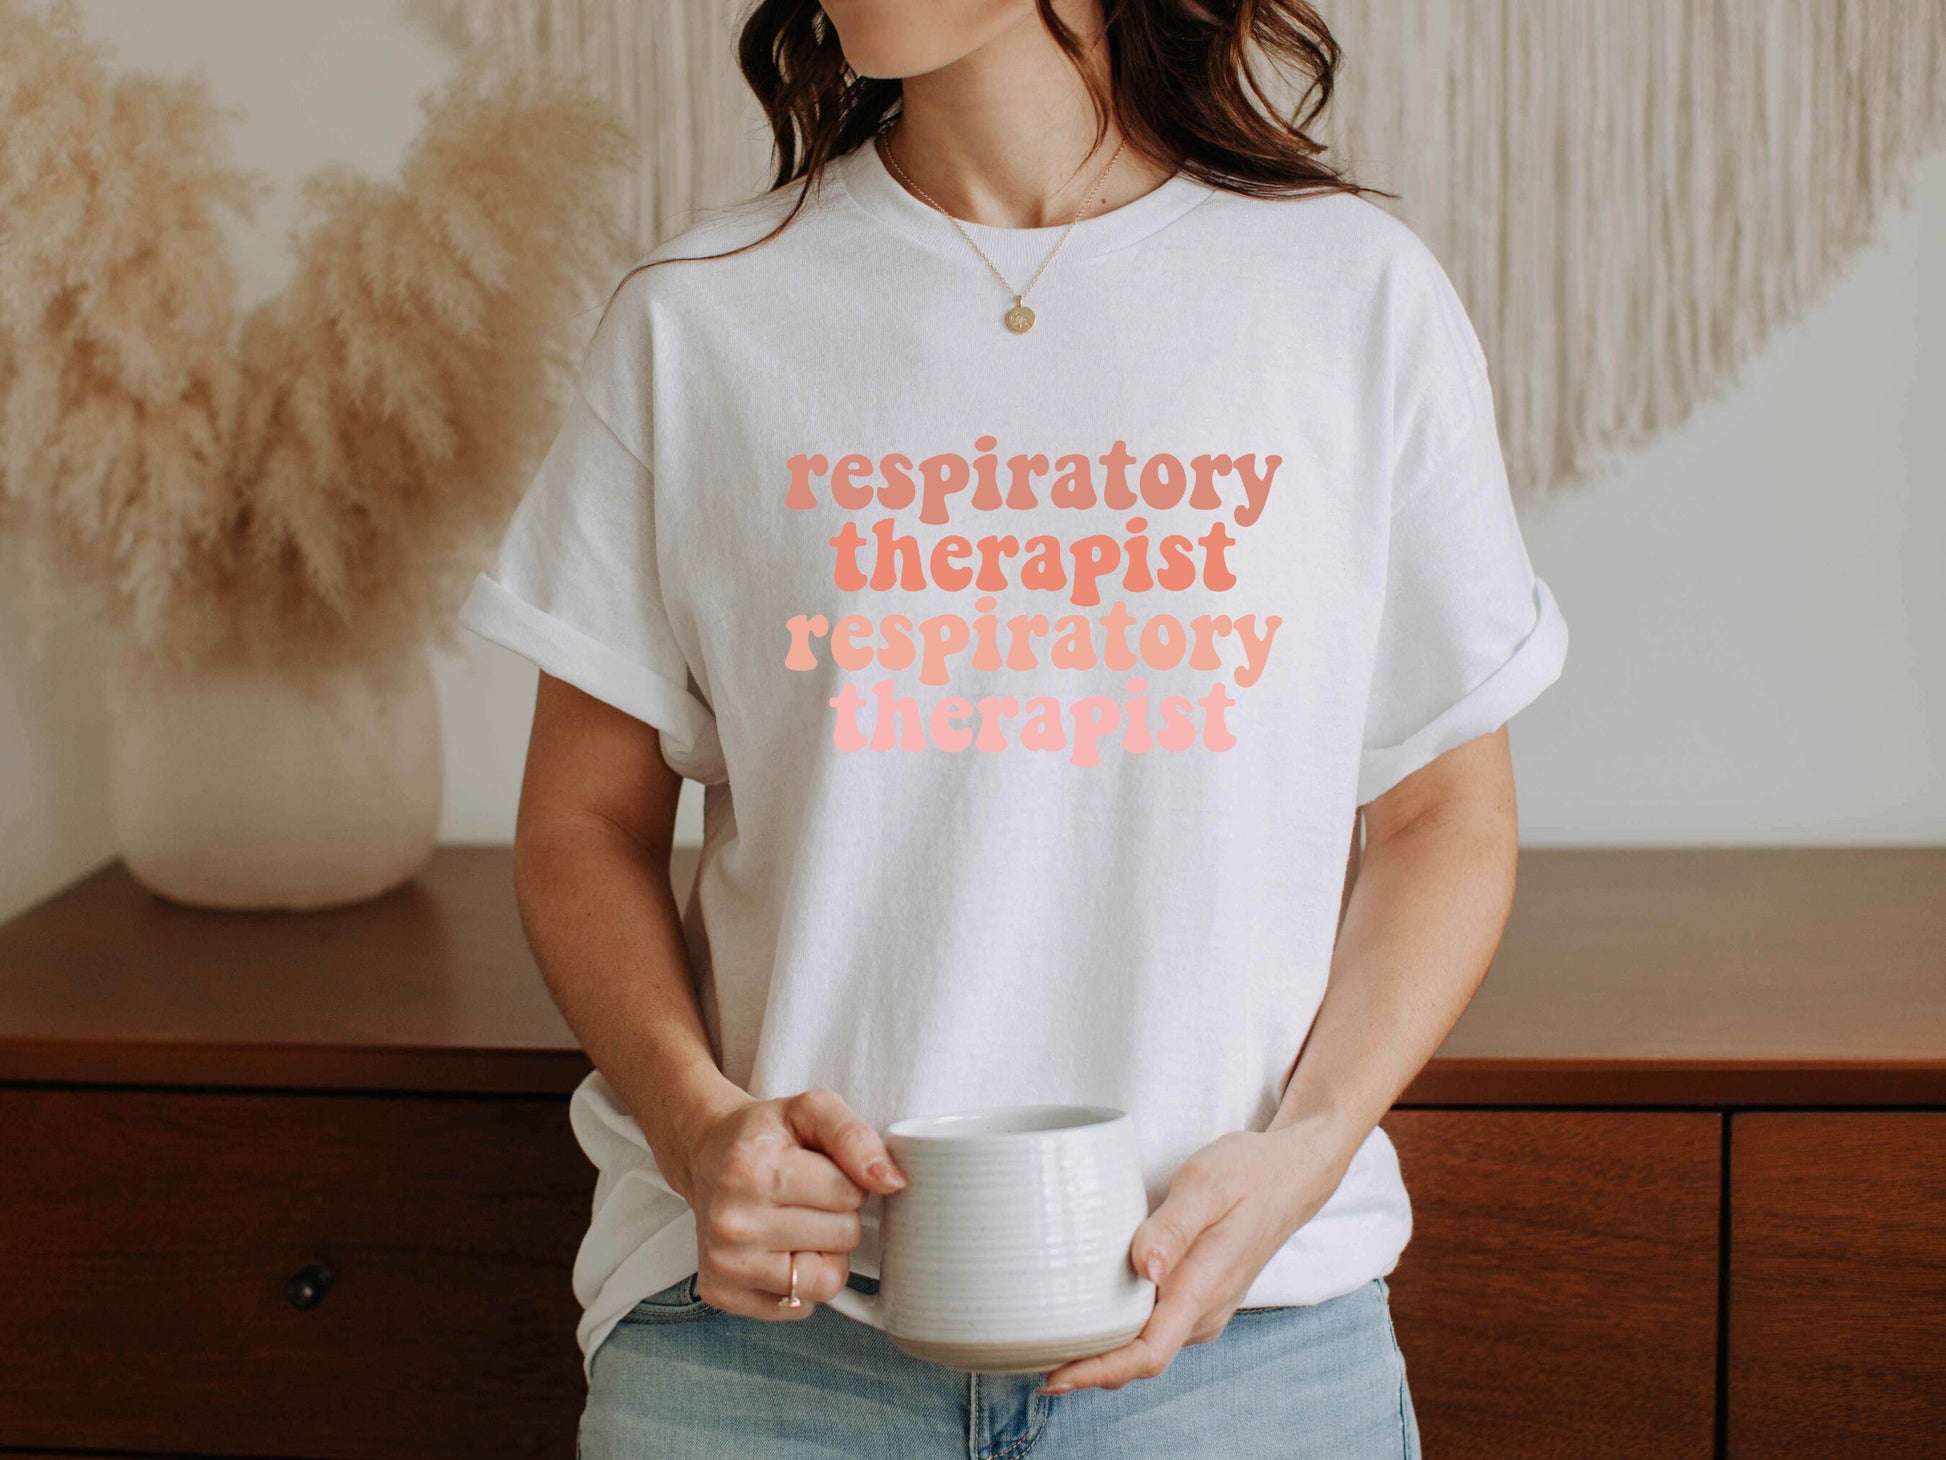 Respiratory Therapist Shirt, RT Shirt, Respiratory Week Gifts, Respiratory Sweatshirt, Gifts for Respiratory